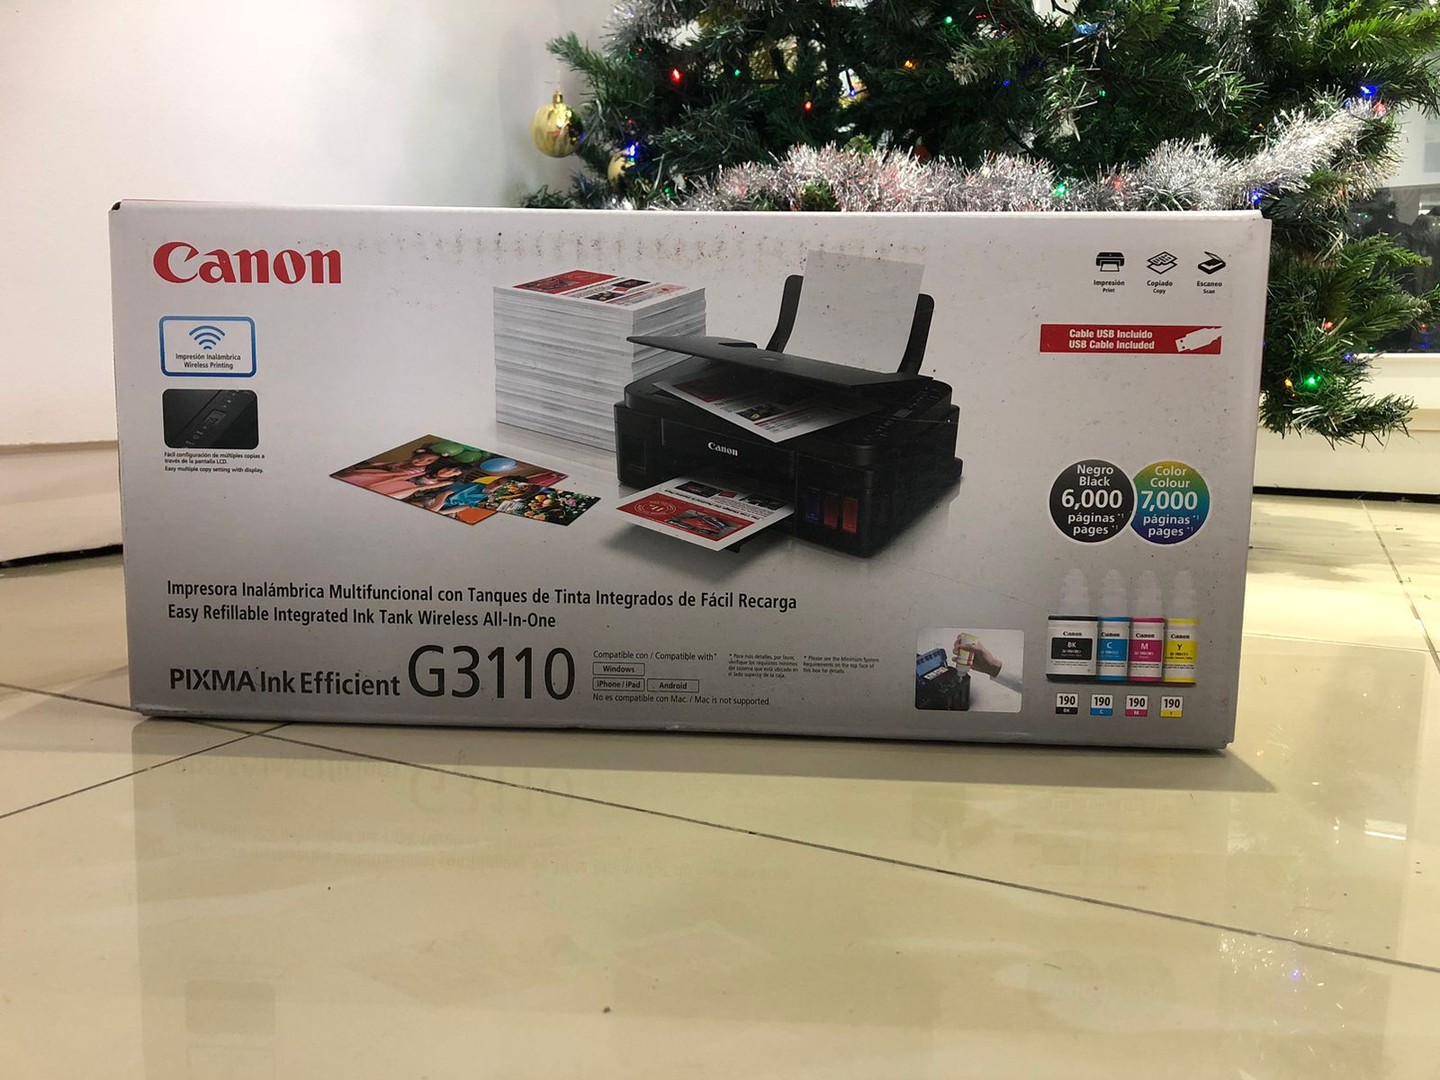 impresoras y scanners - Impresora Canon G3110 Multifuncional a Wifi Nueva y Sellada, Factura y Garantia 3